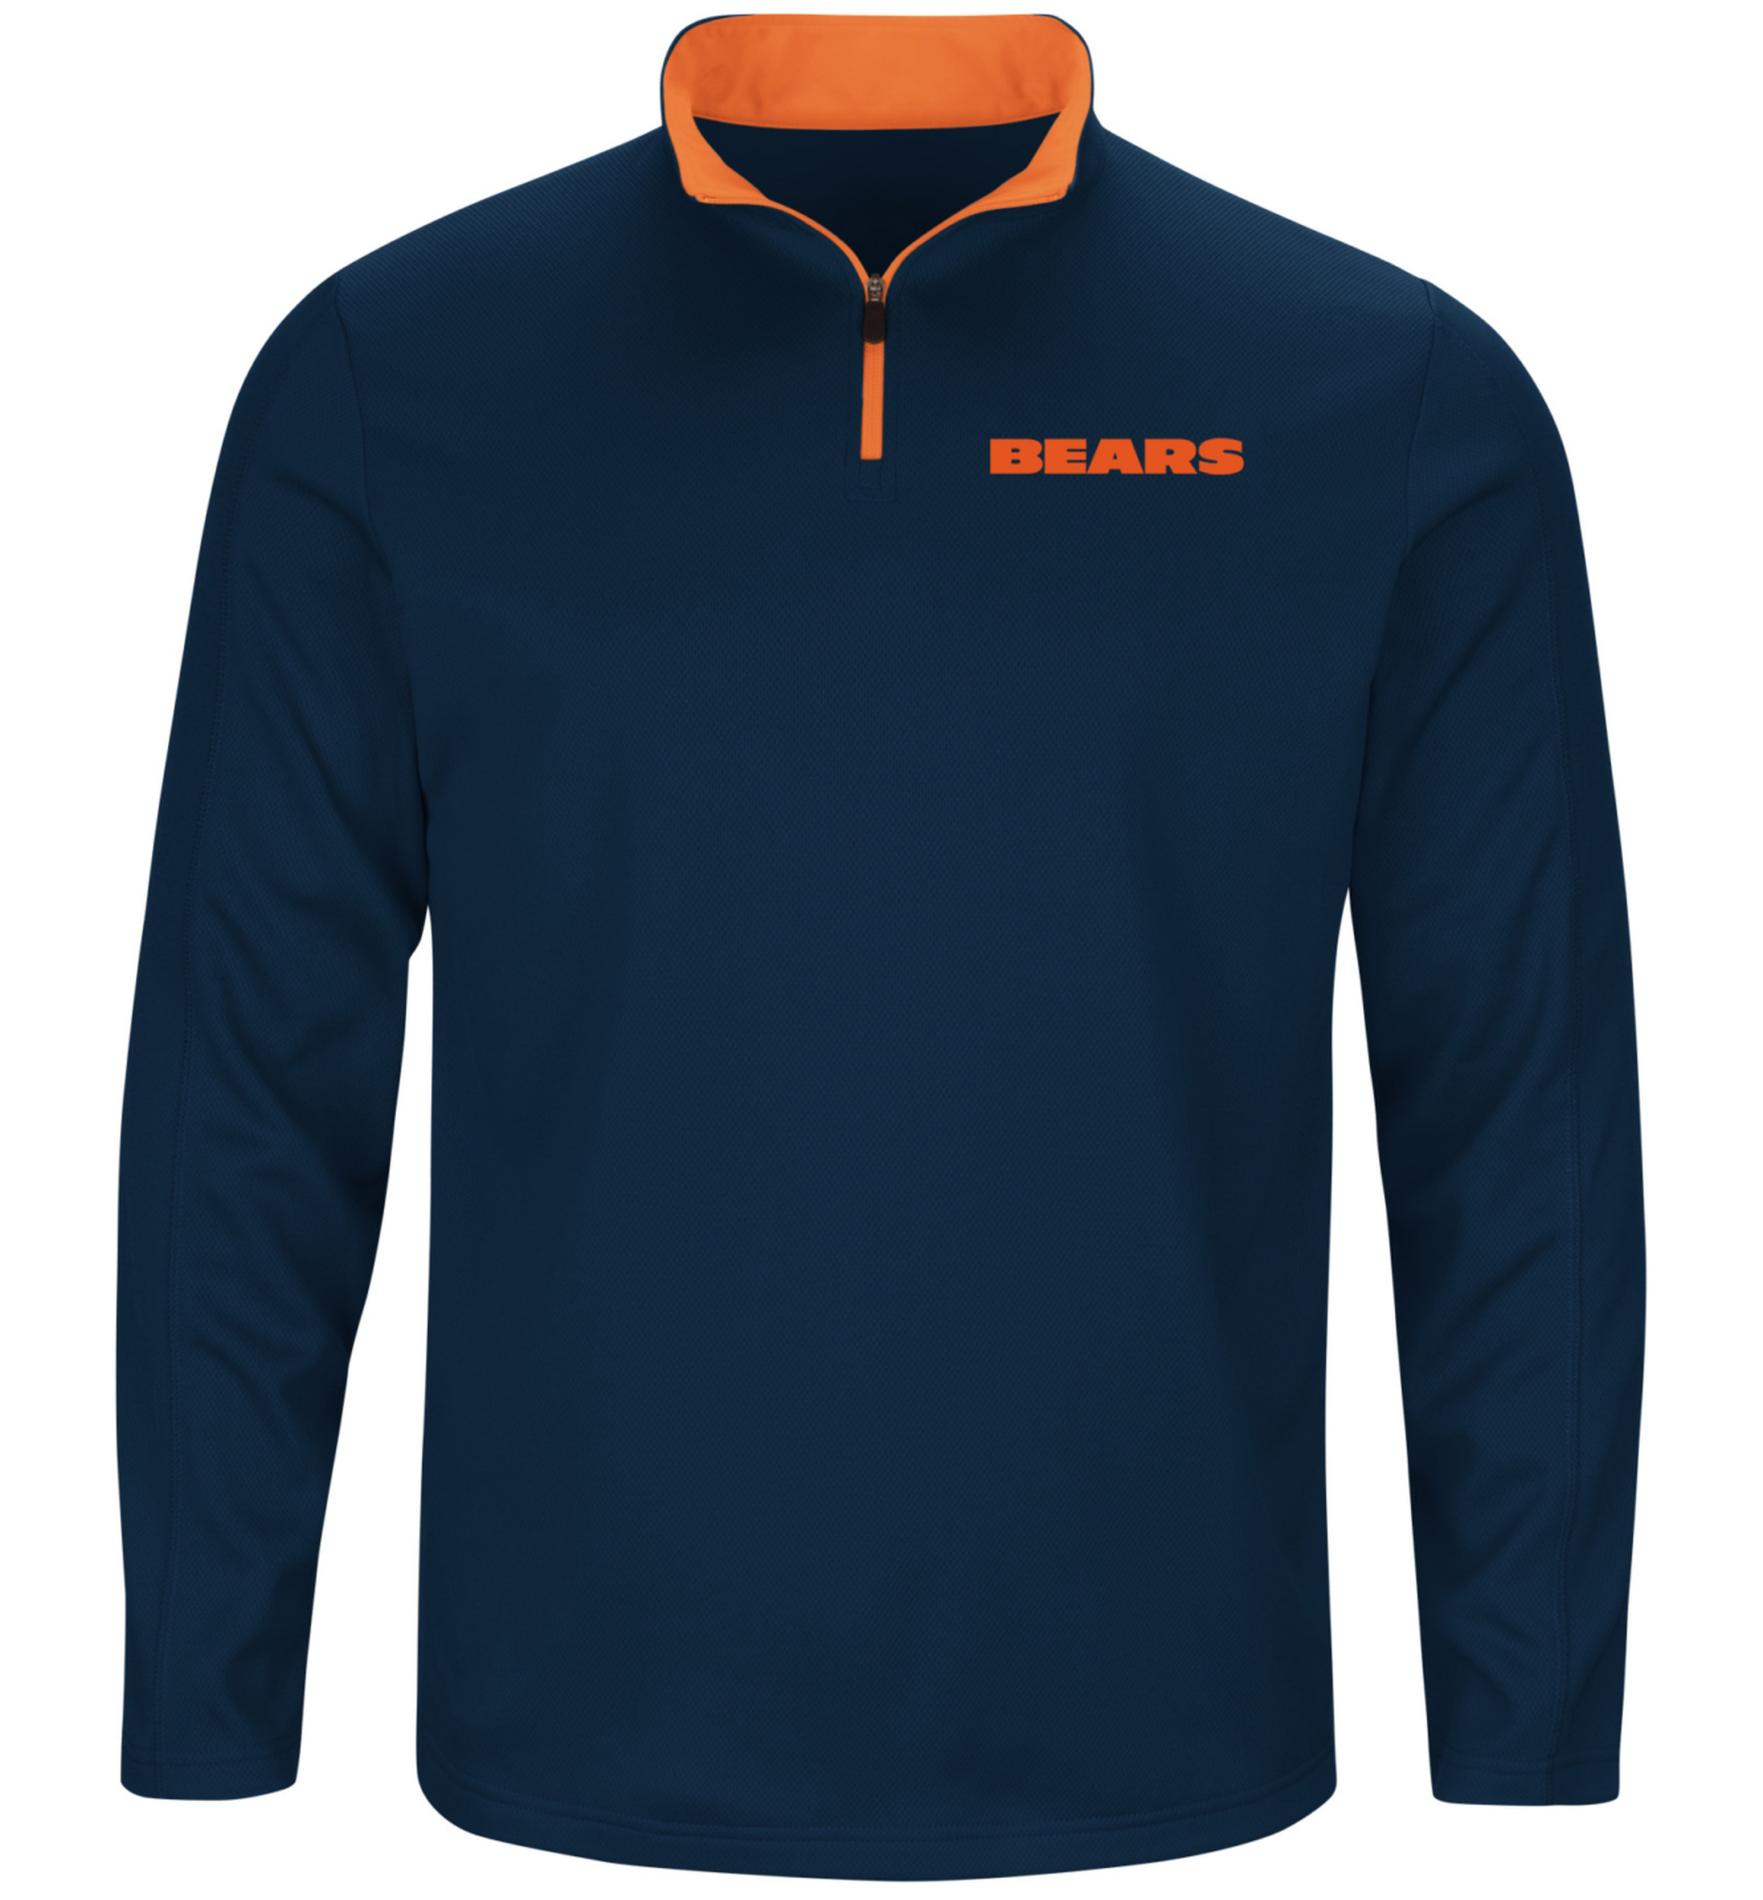 NFL Men's Quarter-Zip Shirt - Chicago Bears